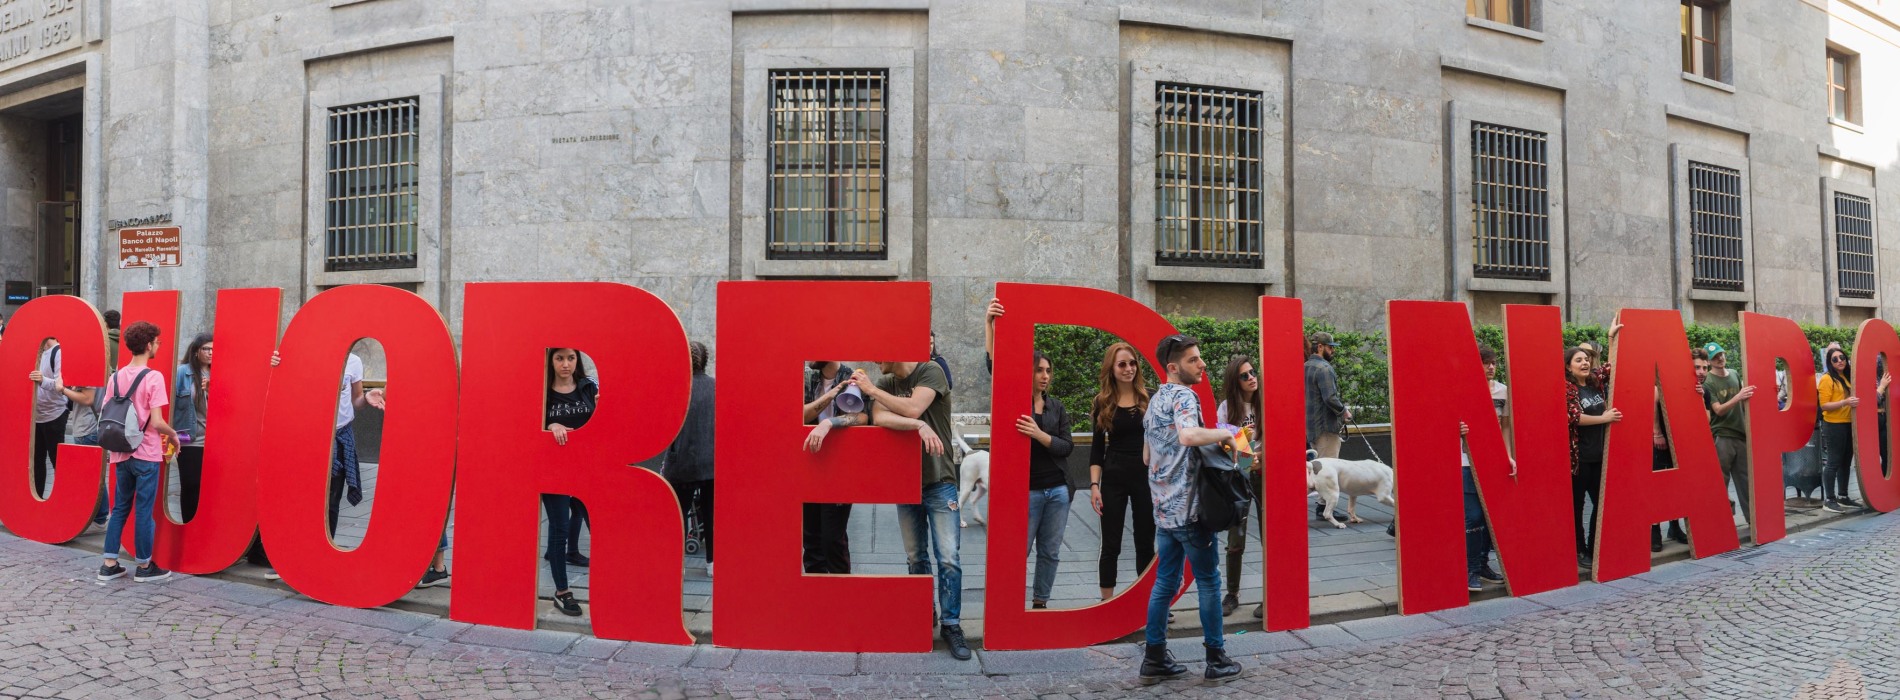 Quartieri Spagnoli, il #cuoredinapoli è rosso e batte per l’arte